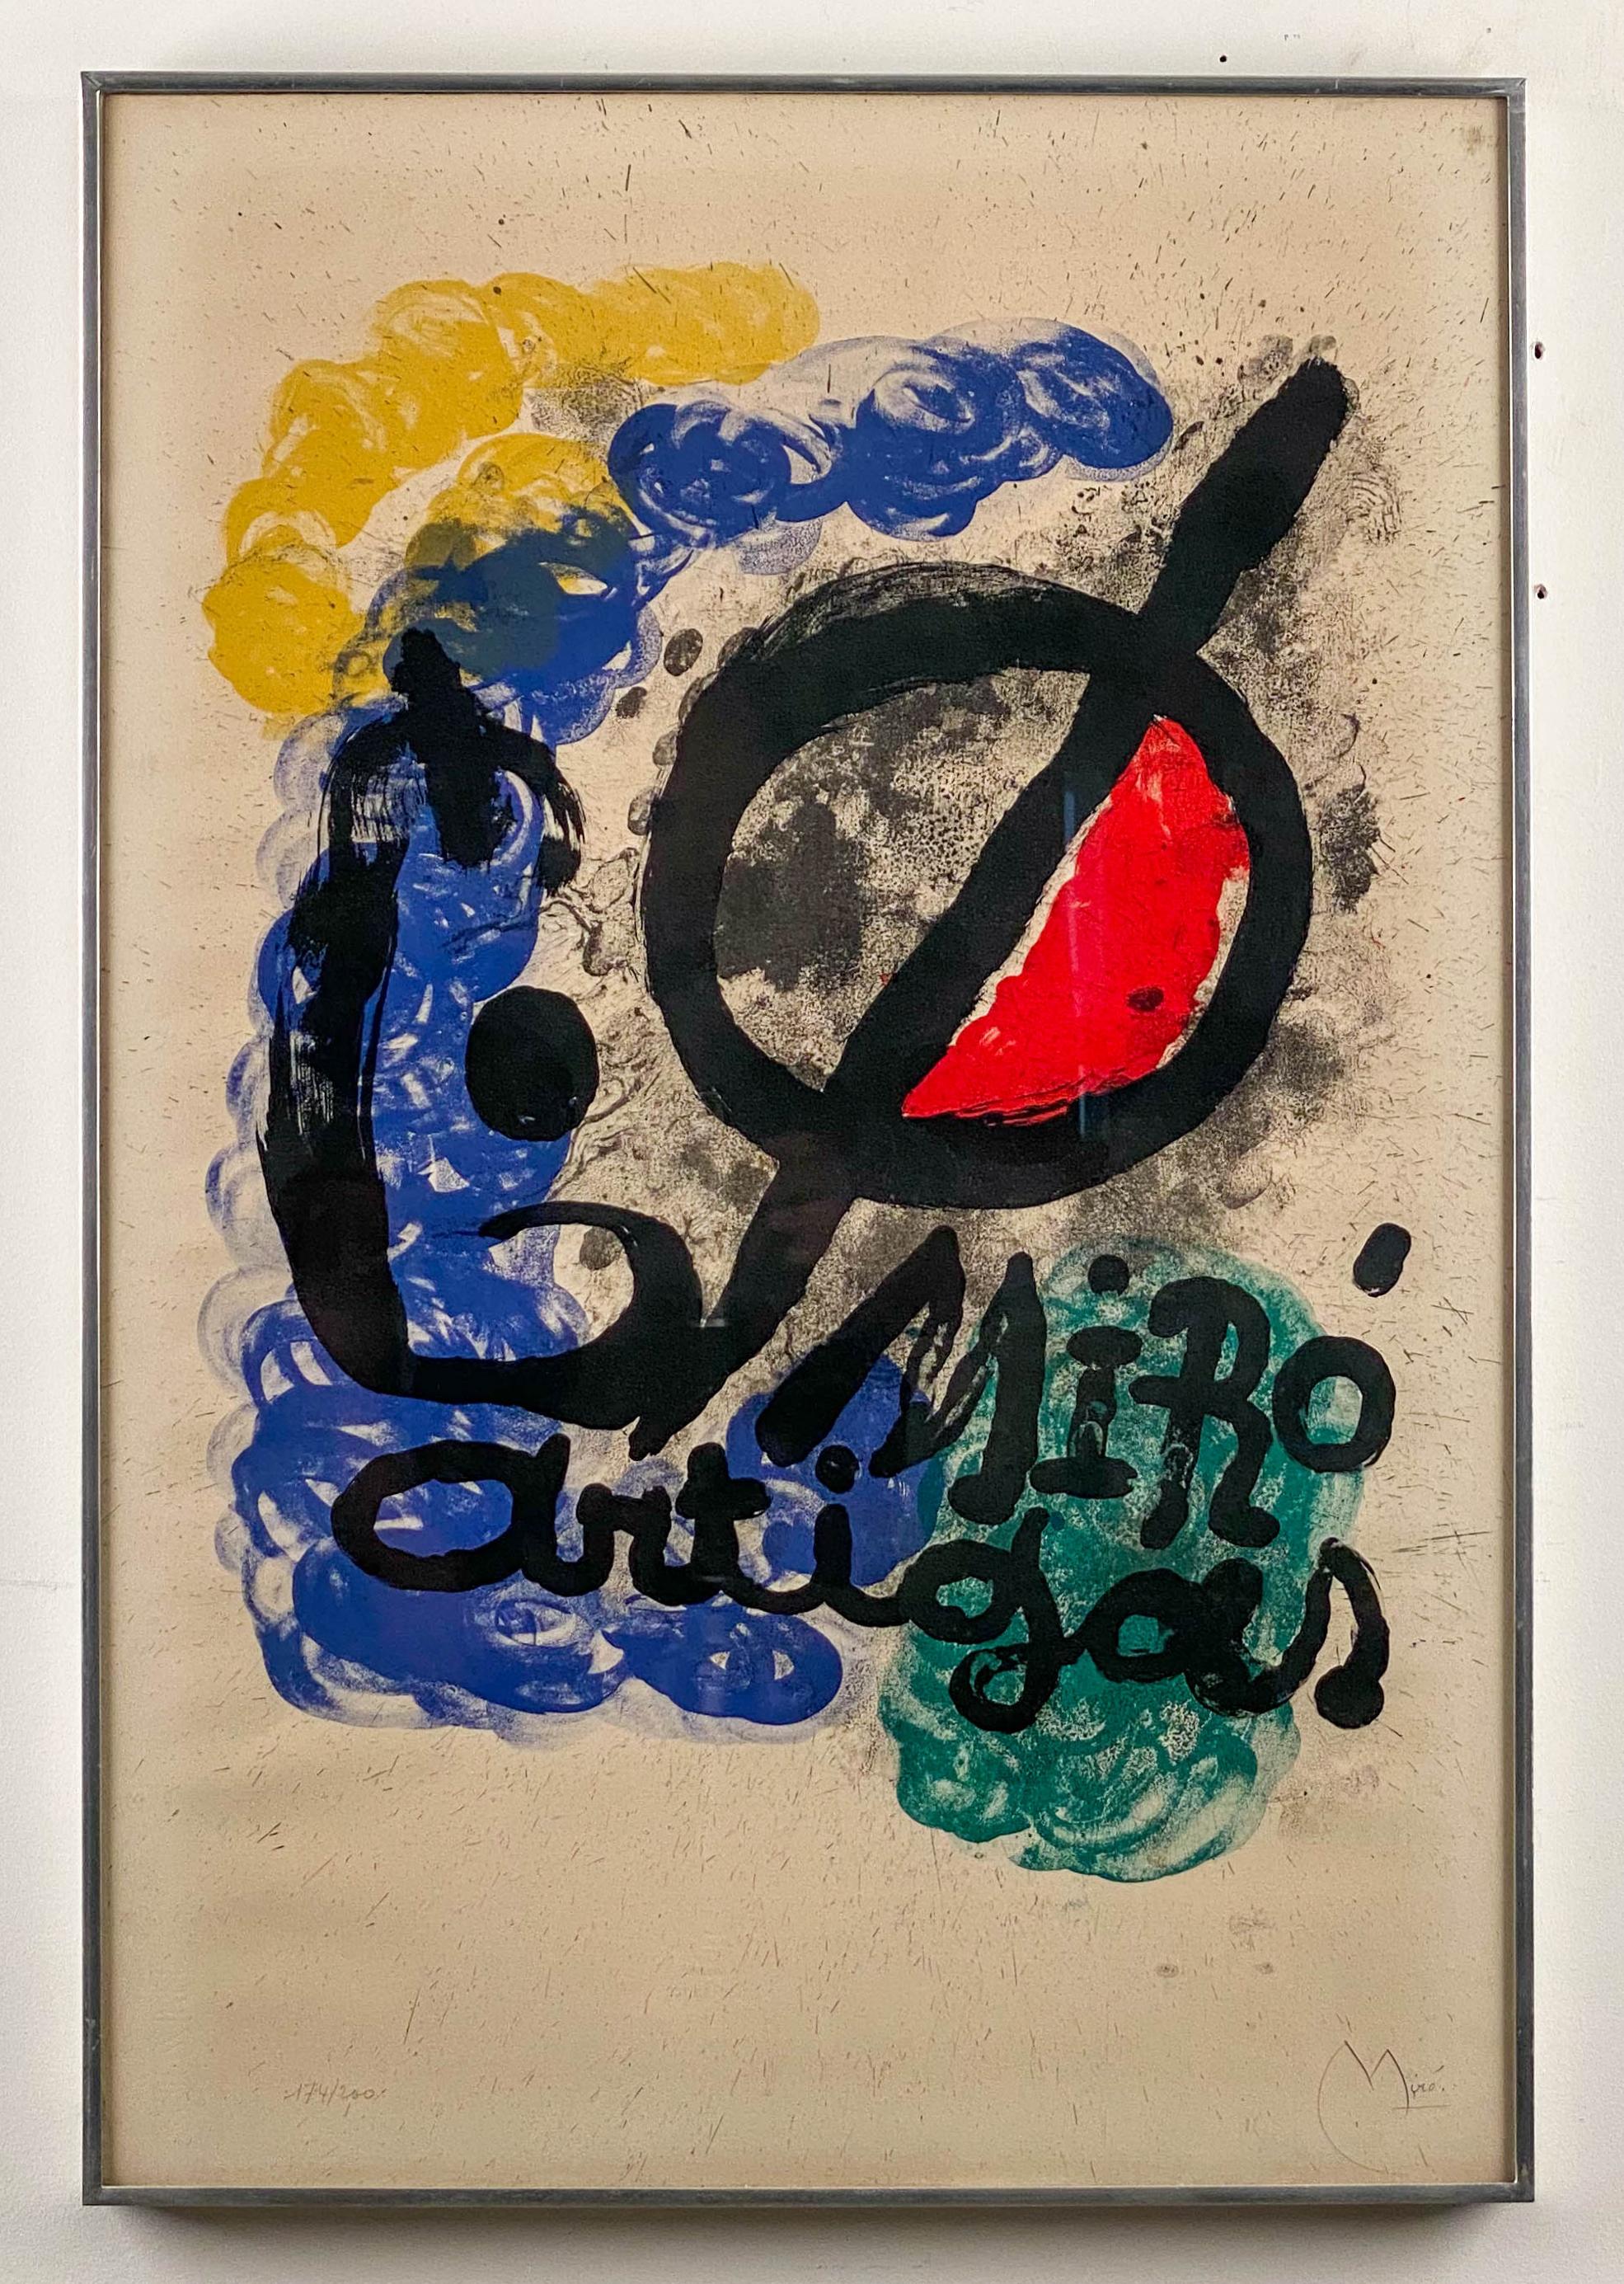 Affiche pour l'Exposition Miro-Artigas, 1963